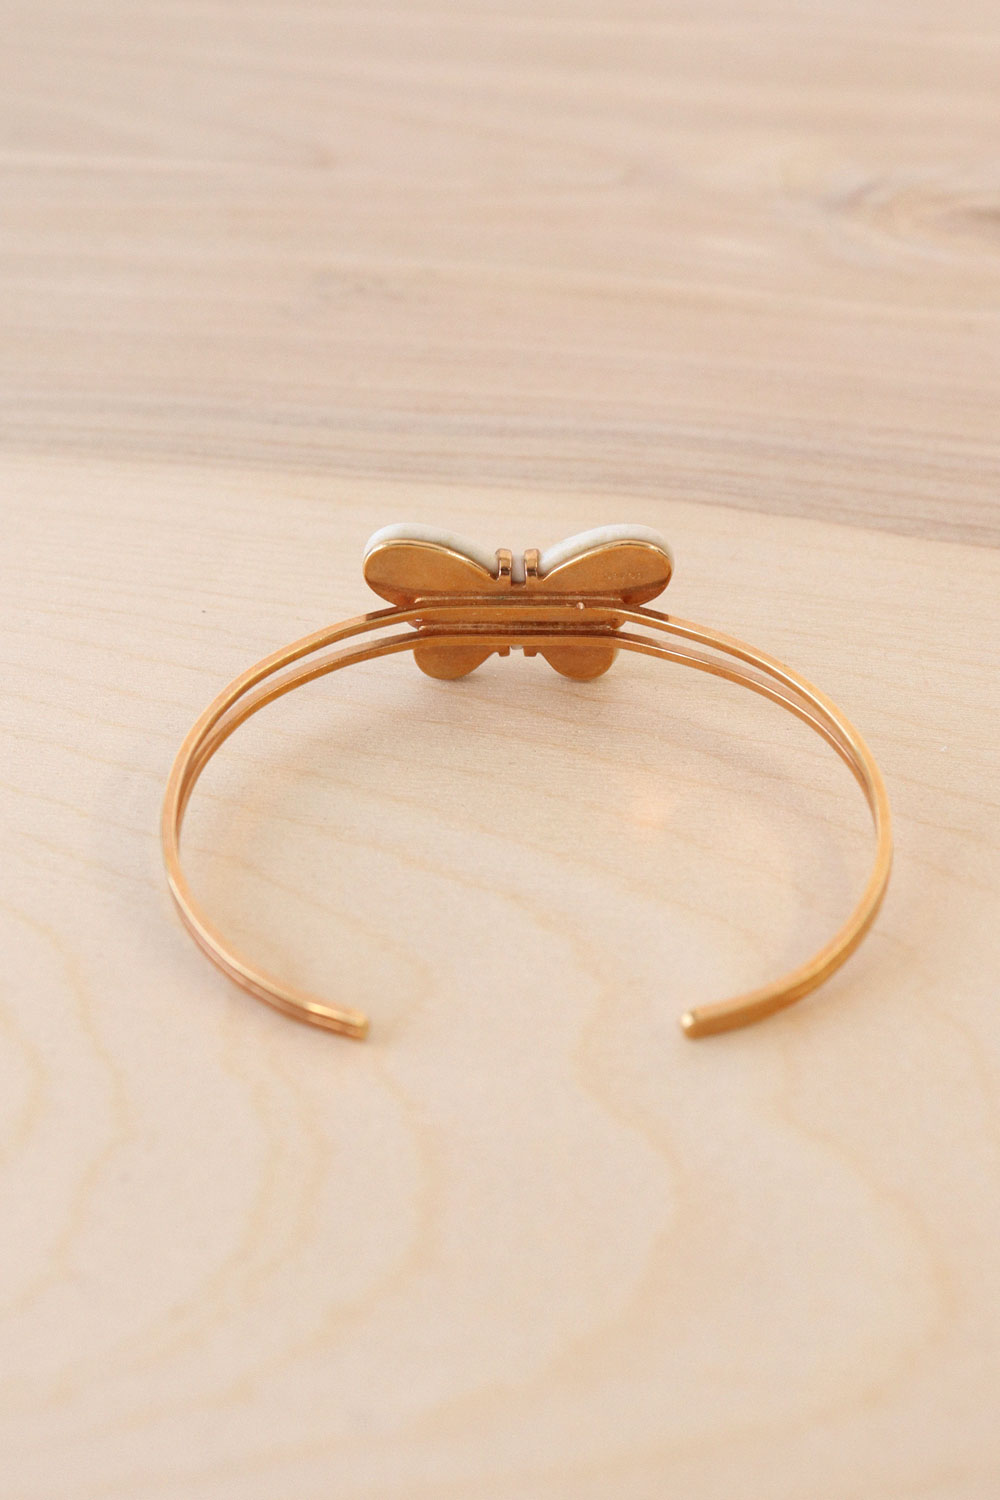 Butterfly Cuff Bracelet